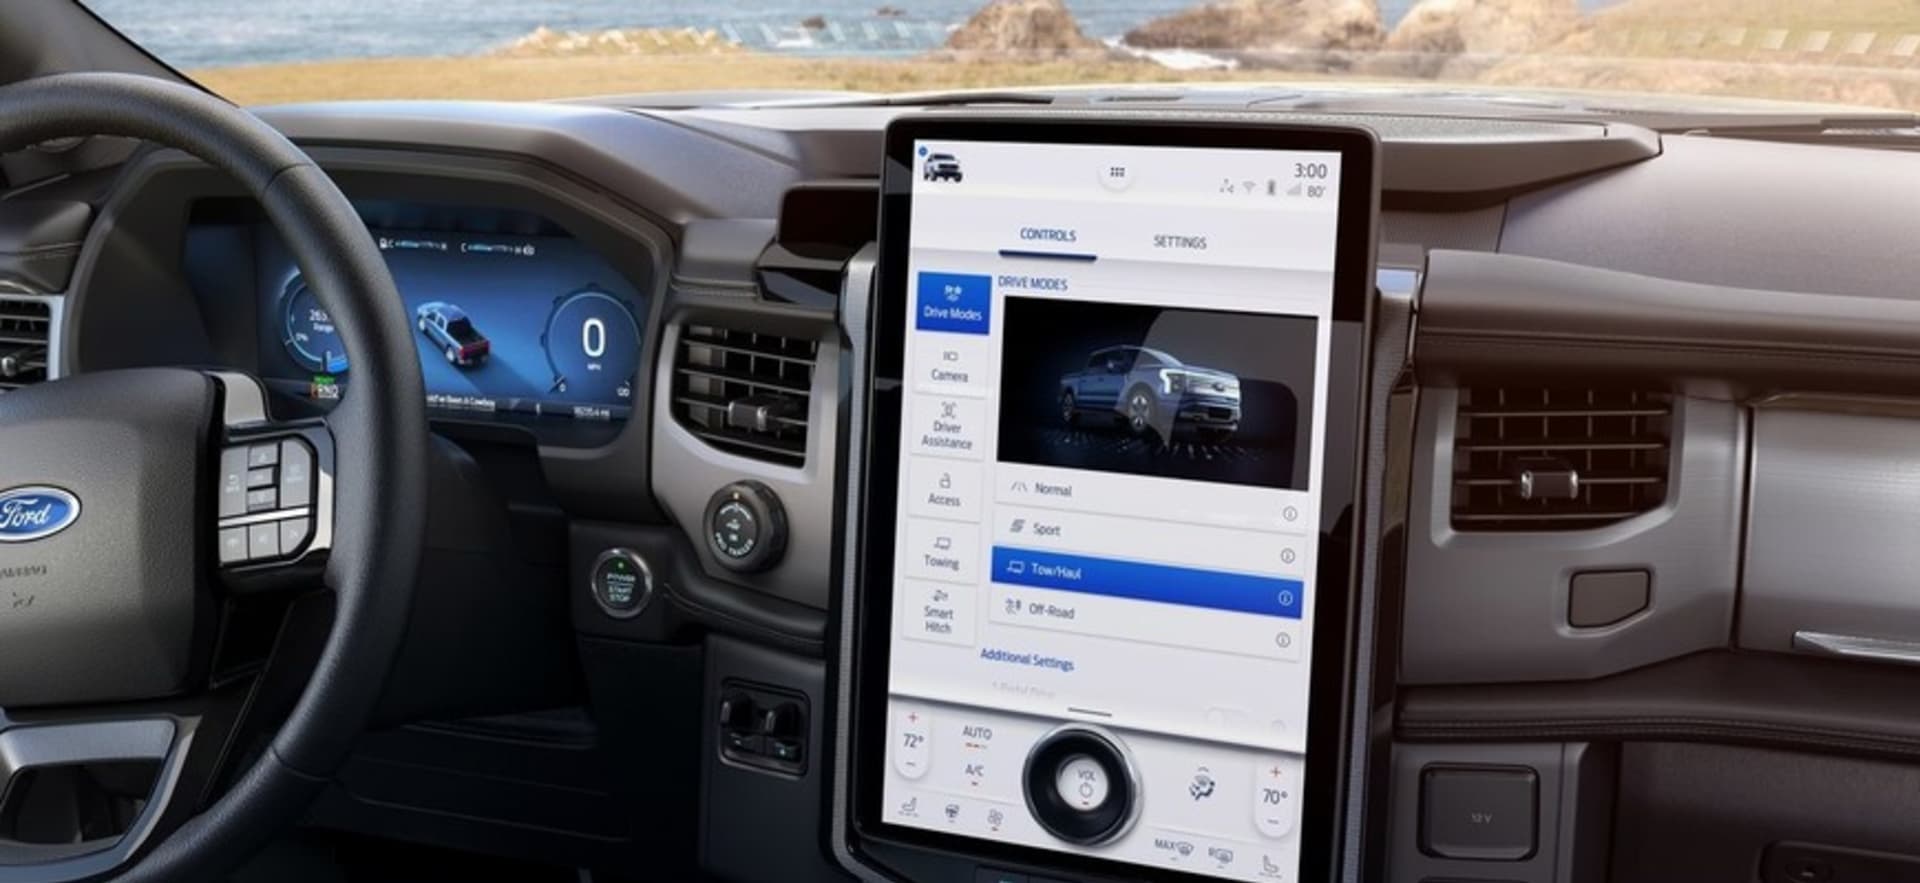 Ford chce na informačních displejích ve svých autech zobrazovat reklamy. To nevypadá zrovna bezpečně.